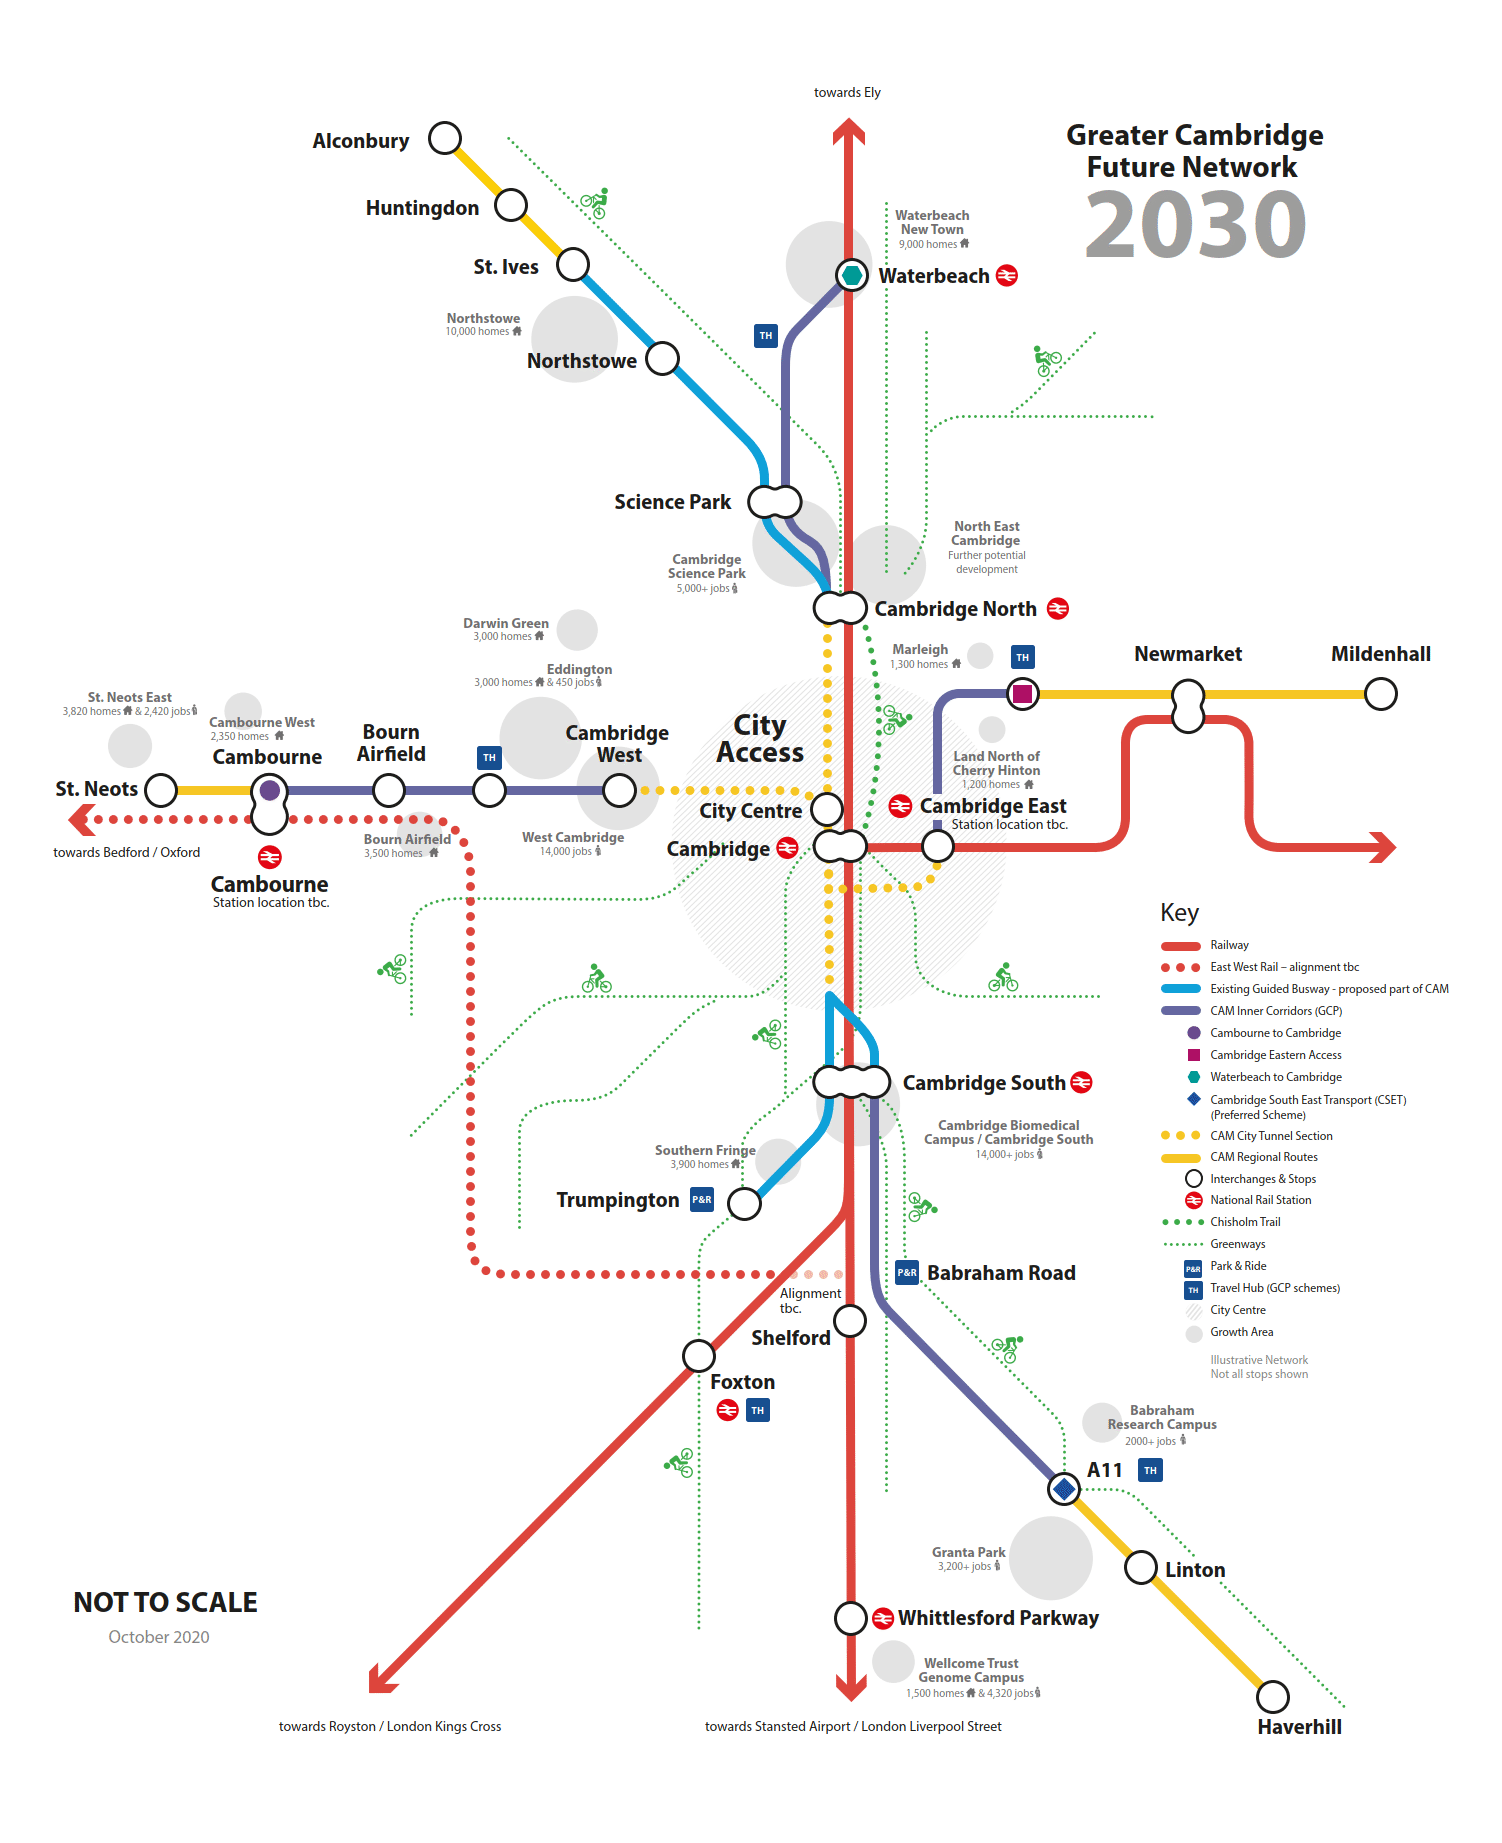 Greater Cambridge Future Network 2030